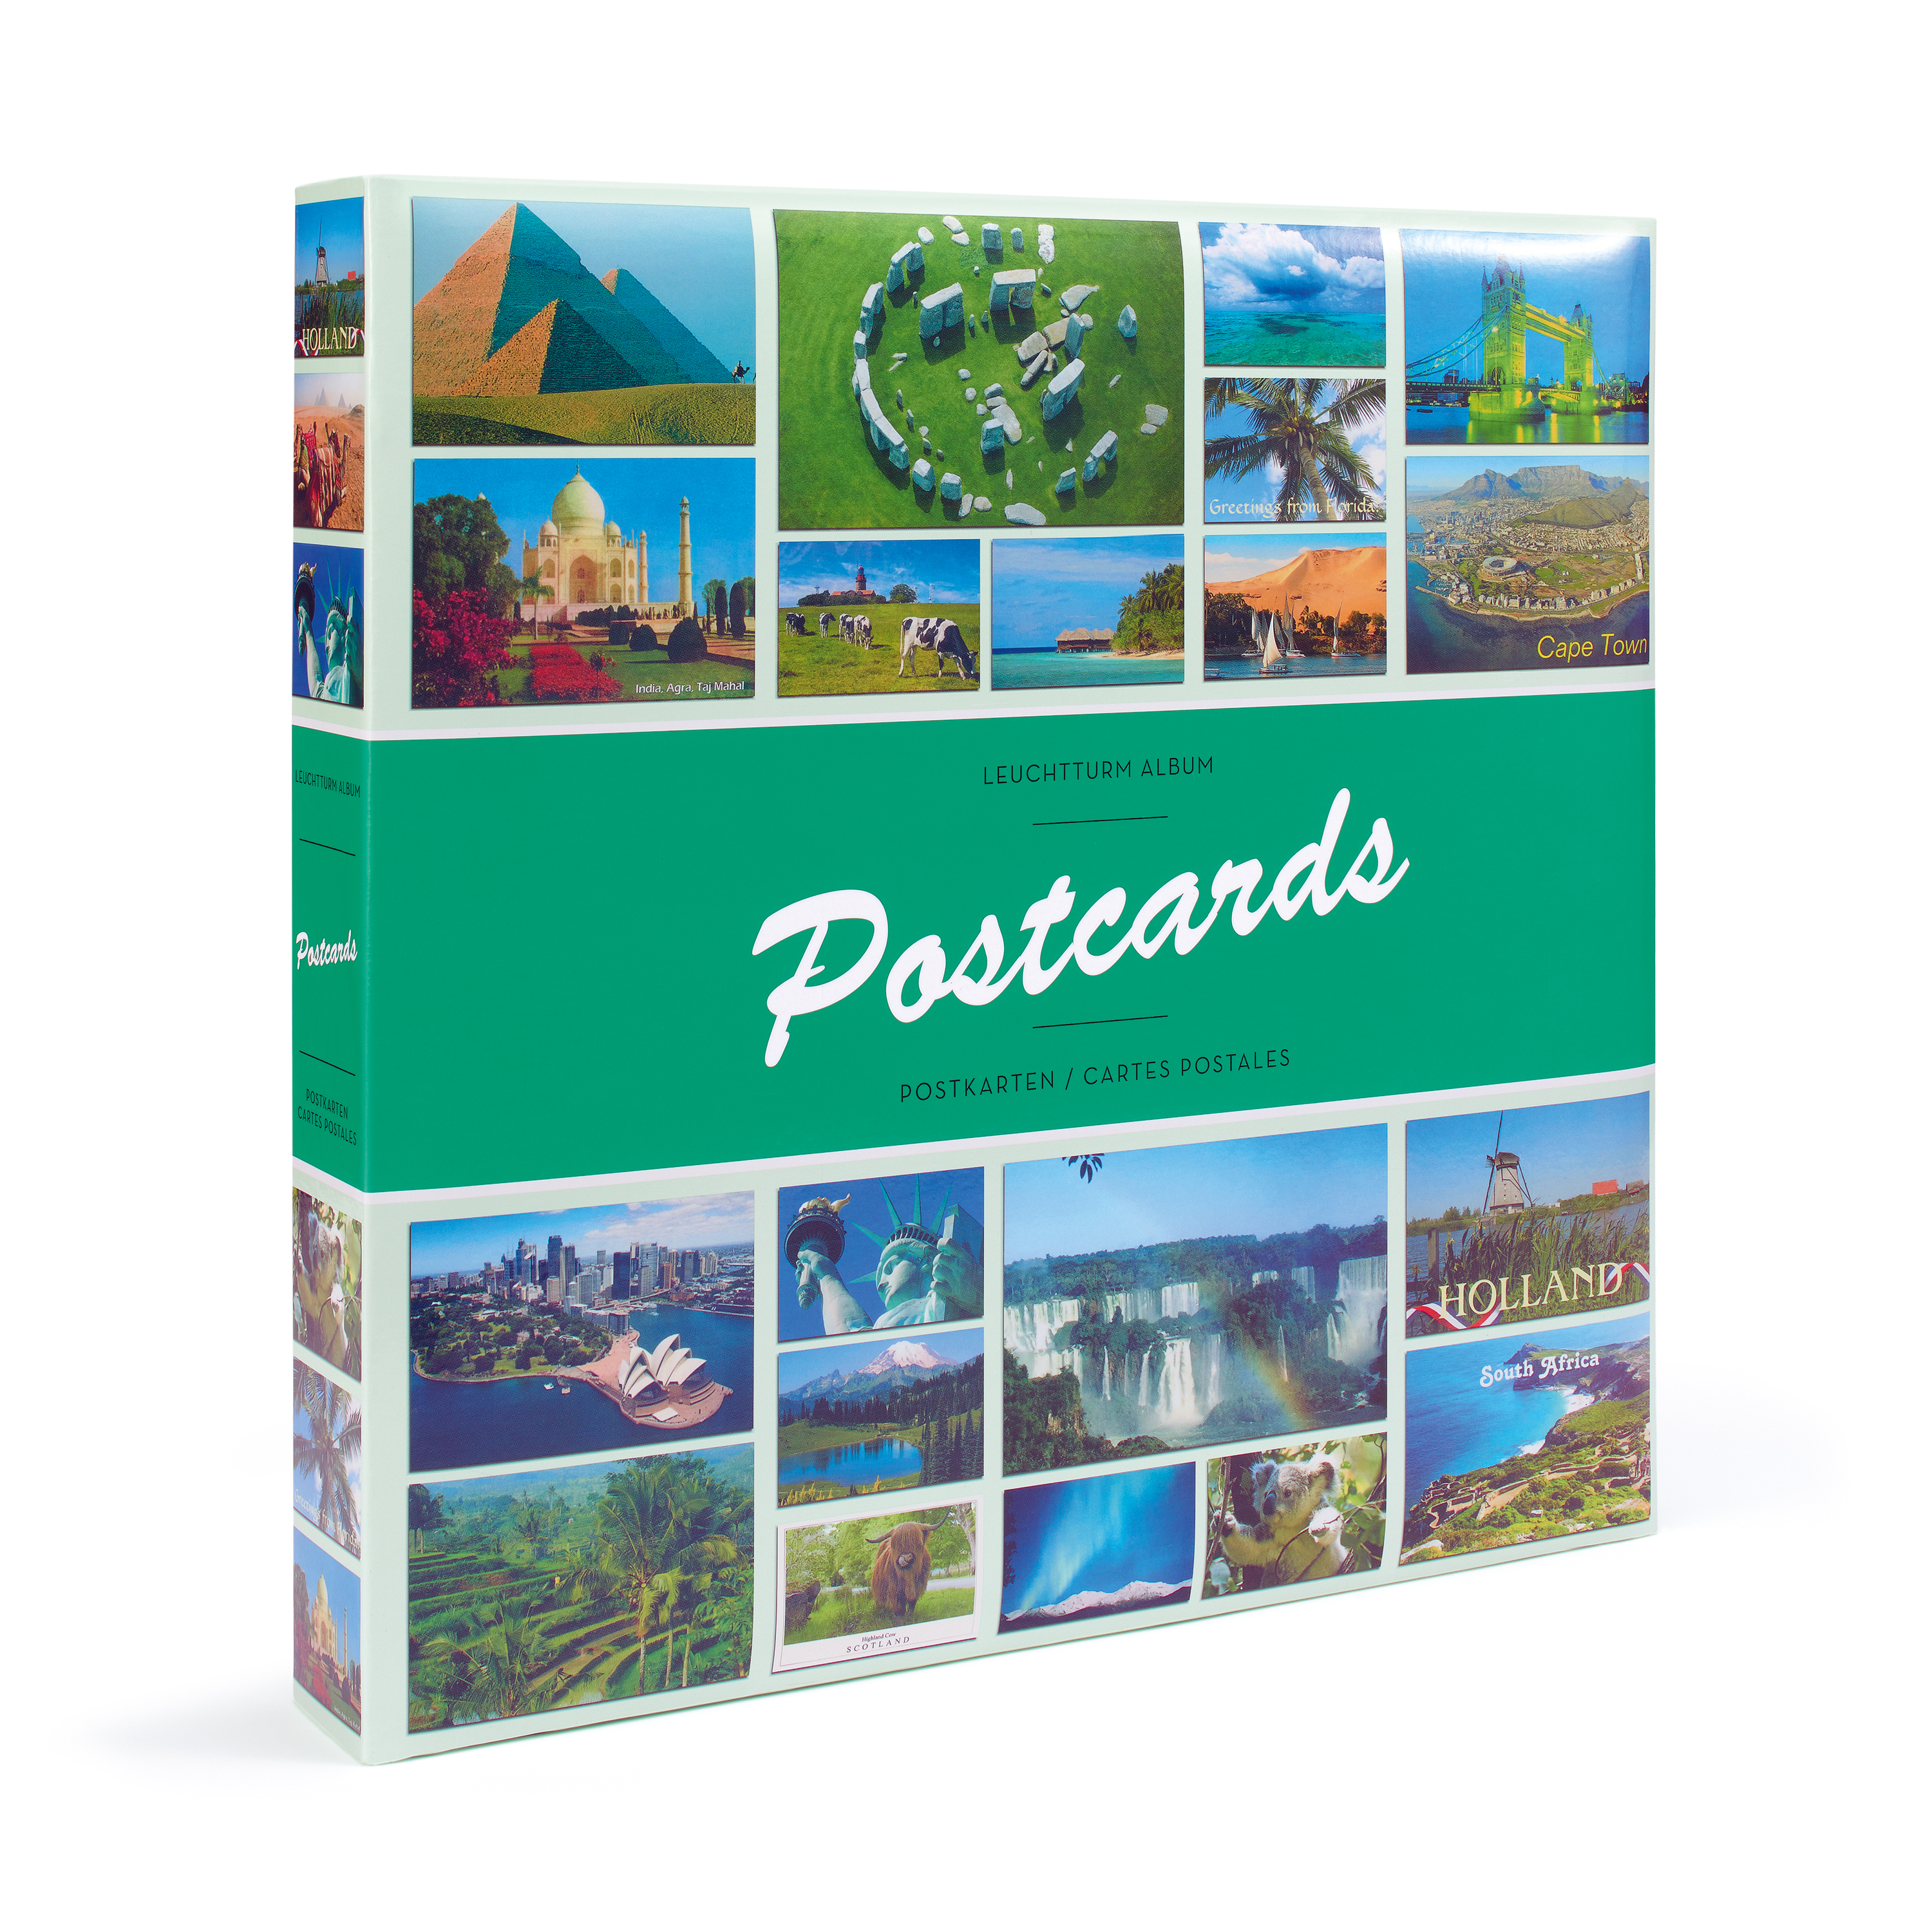 Album POSTKARTEN pour 600 cartes postales, avec 50 feuilles relliées online